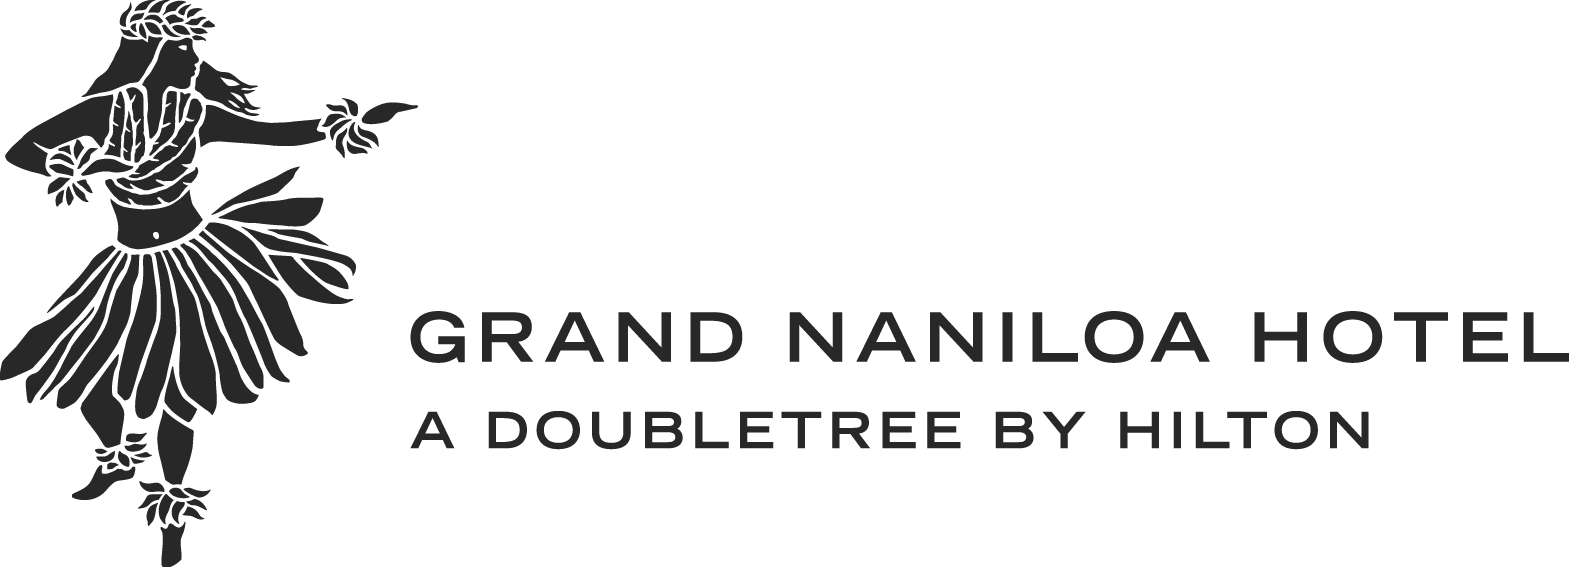 The Grand Naniloa Hotel